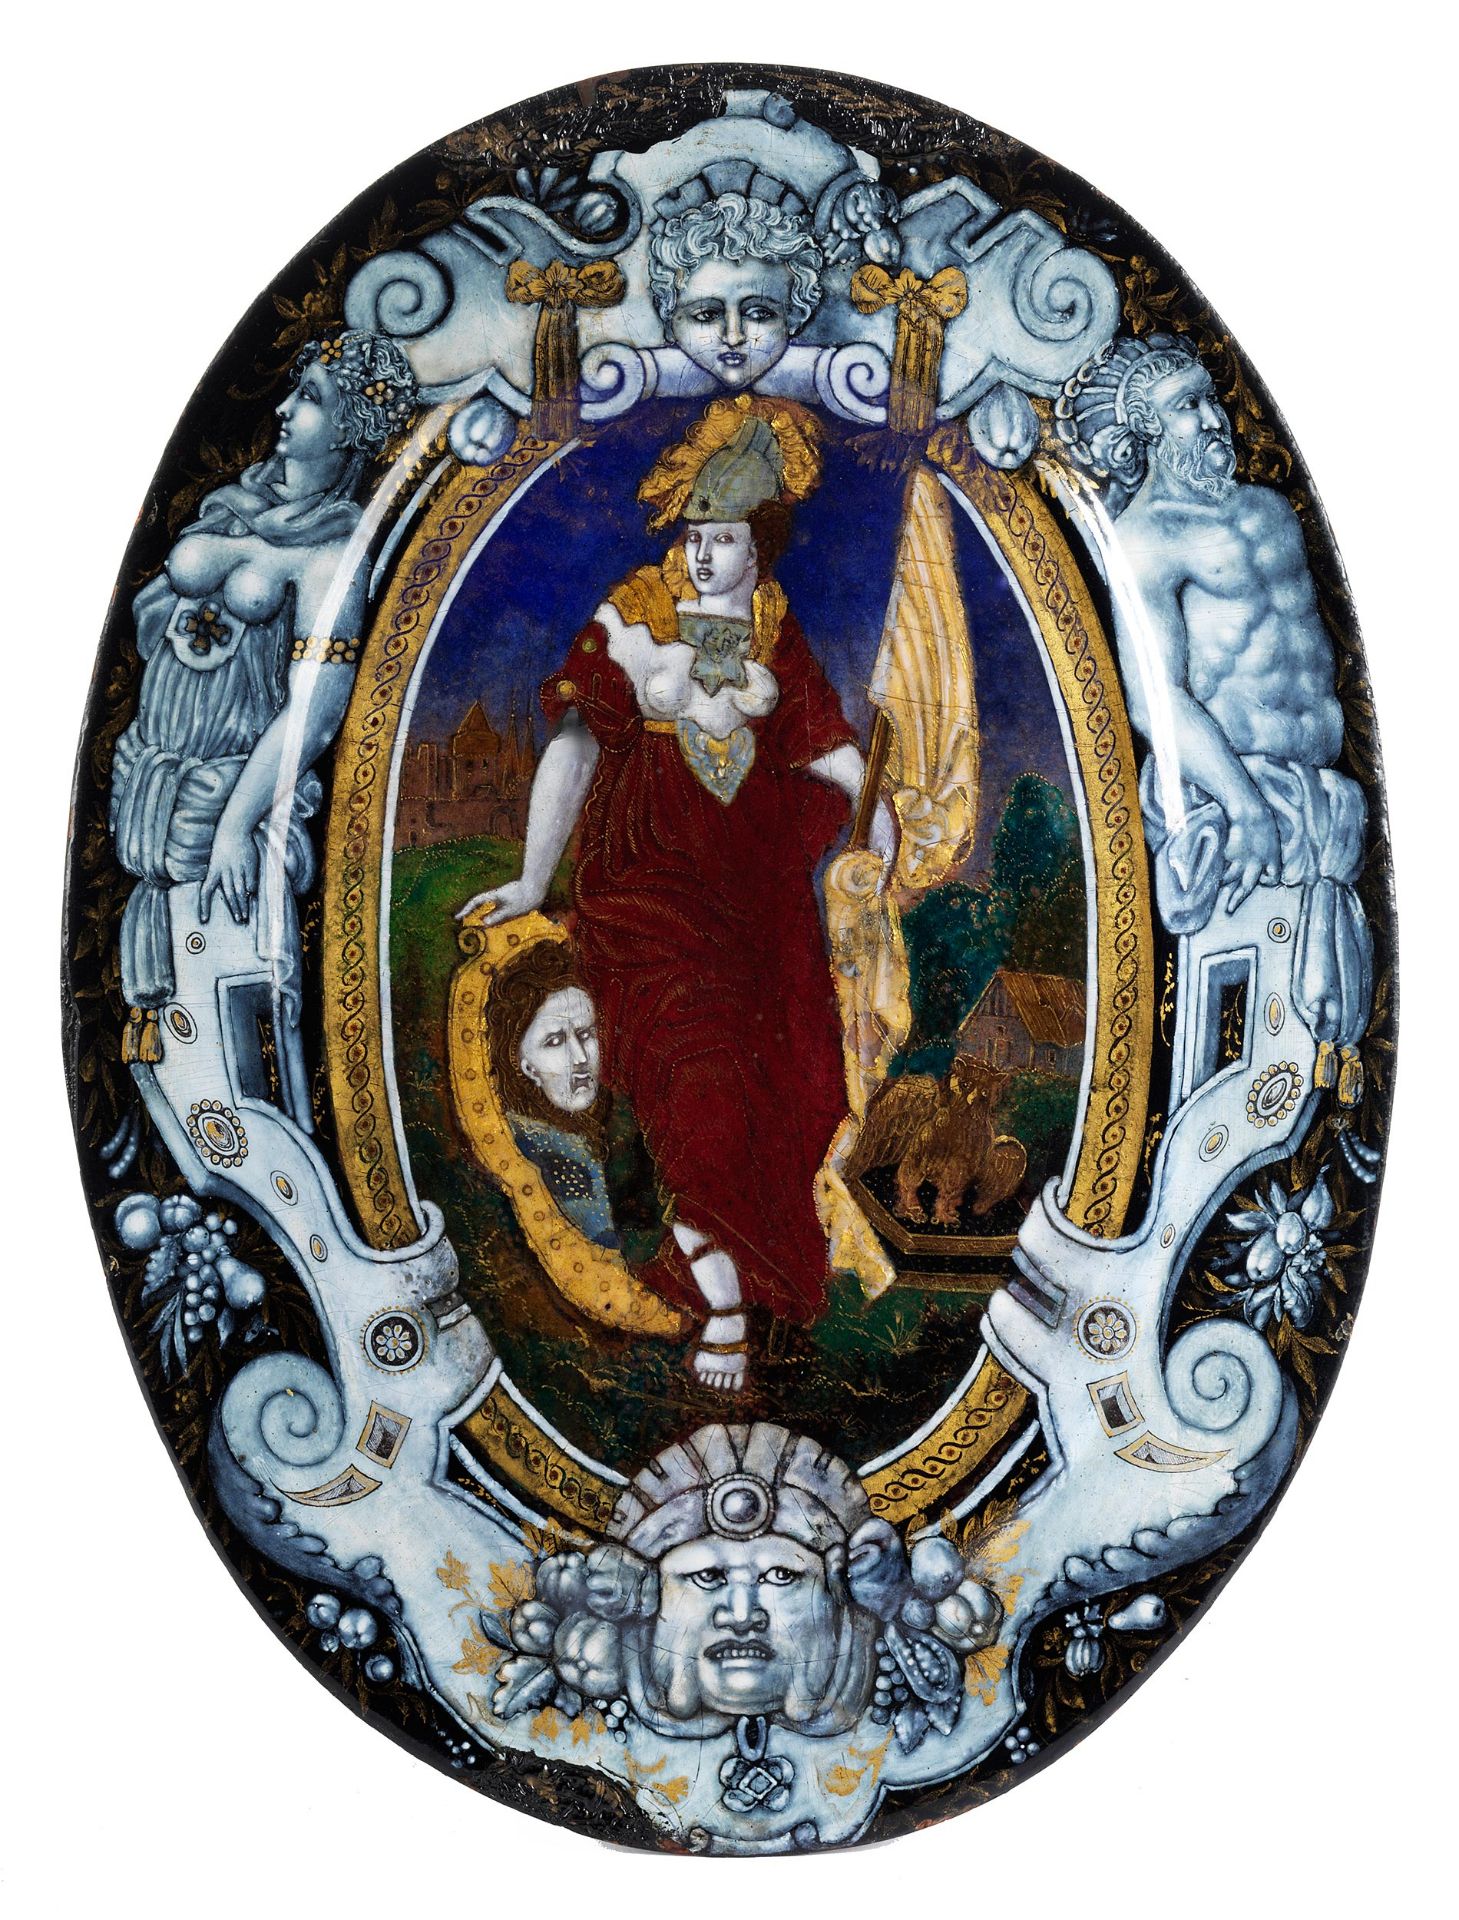 Grosse museale Limoges-Emailbildplatte des 16. Jahrhunderts mit Darstellung der Göttin Minerva